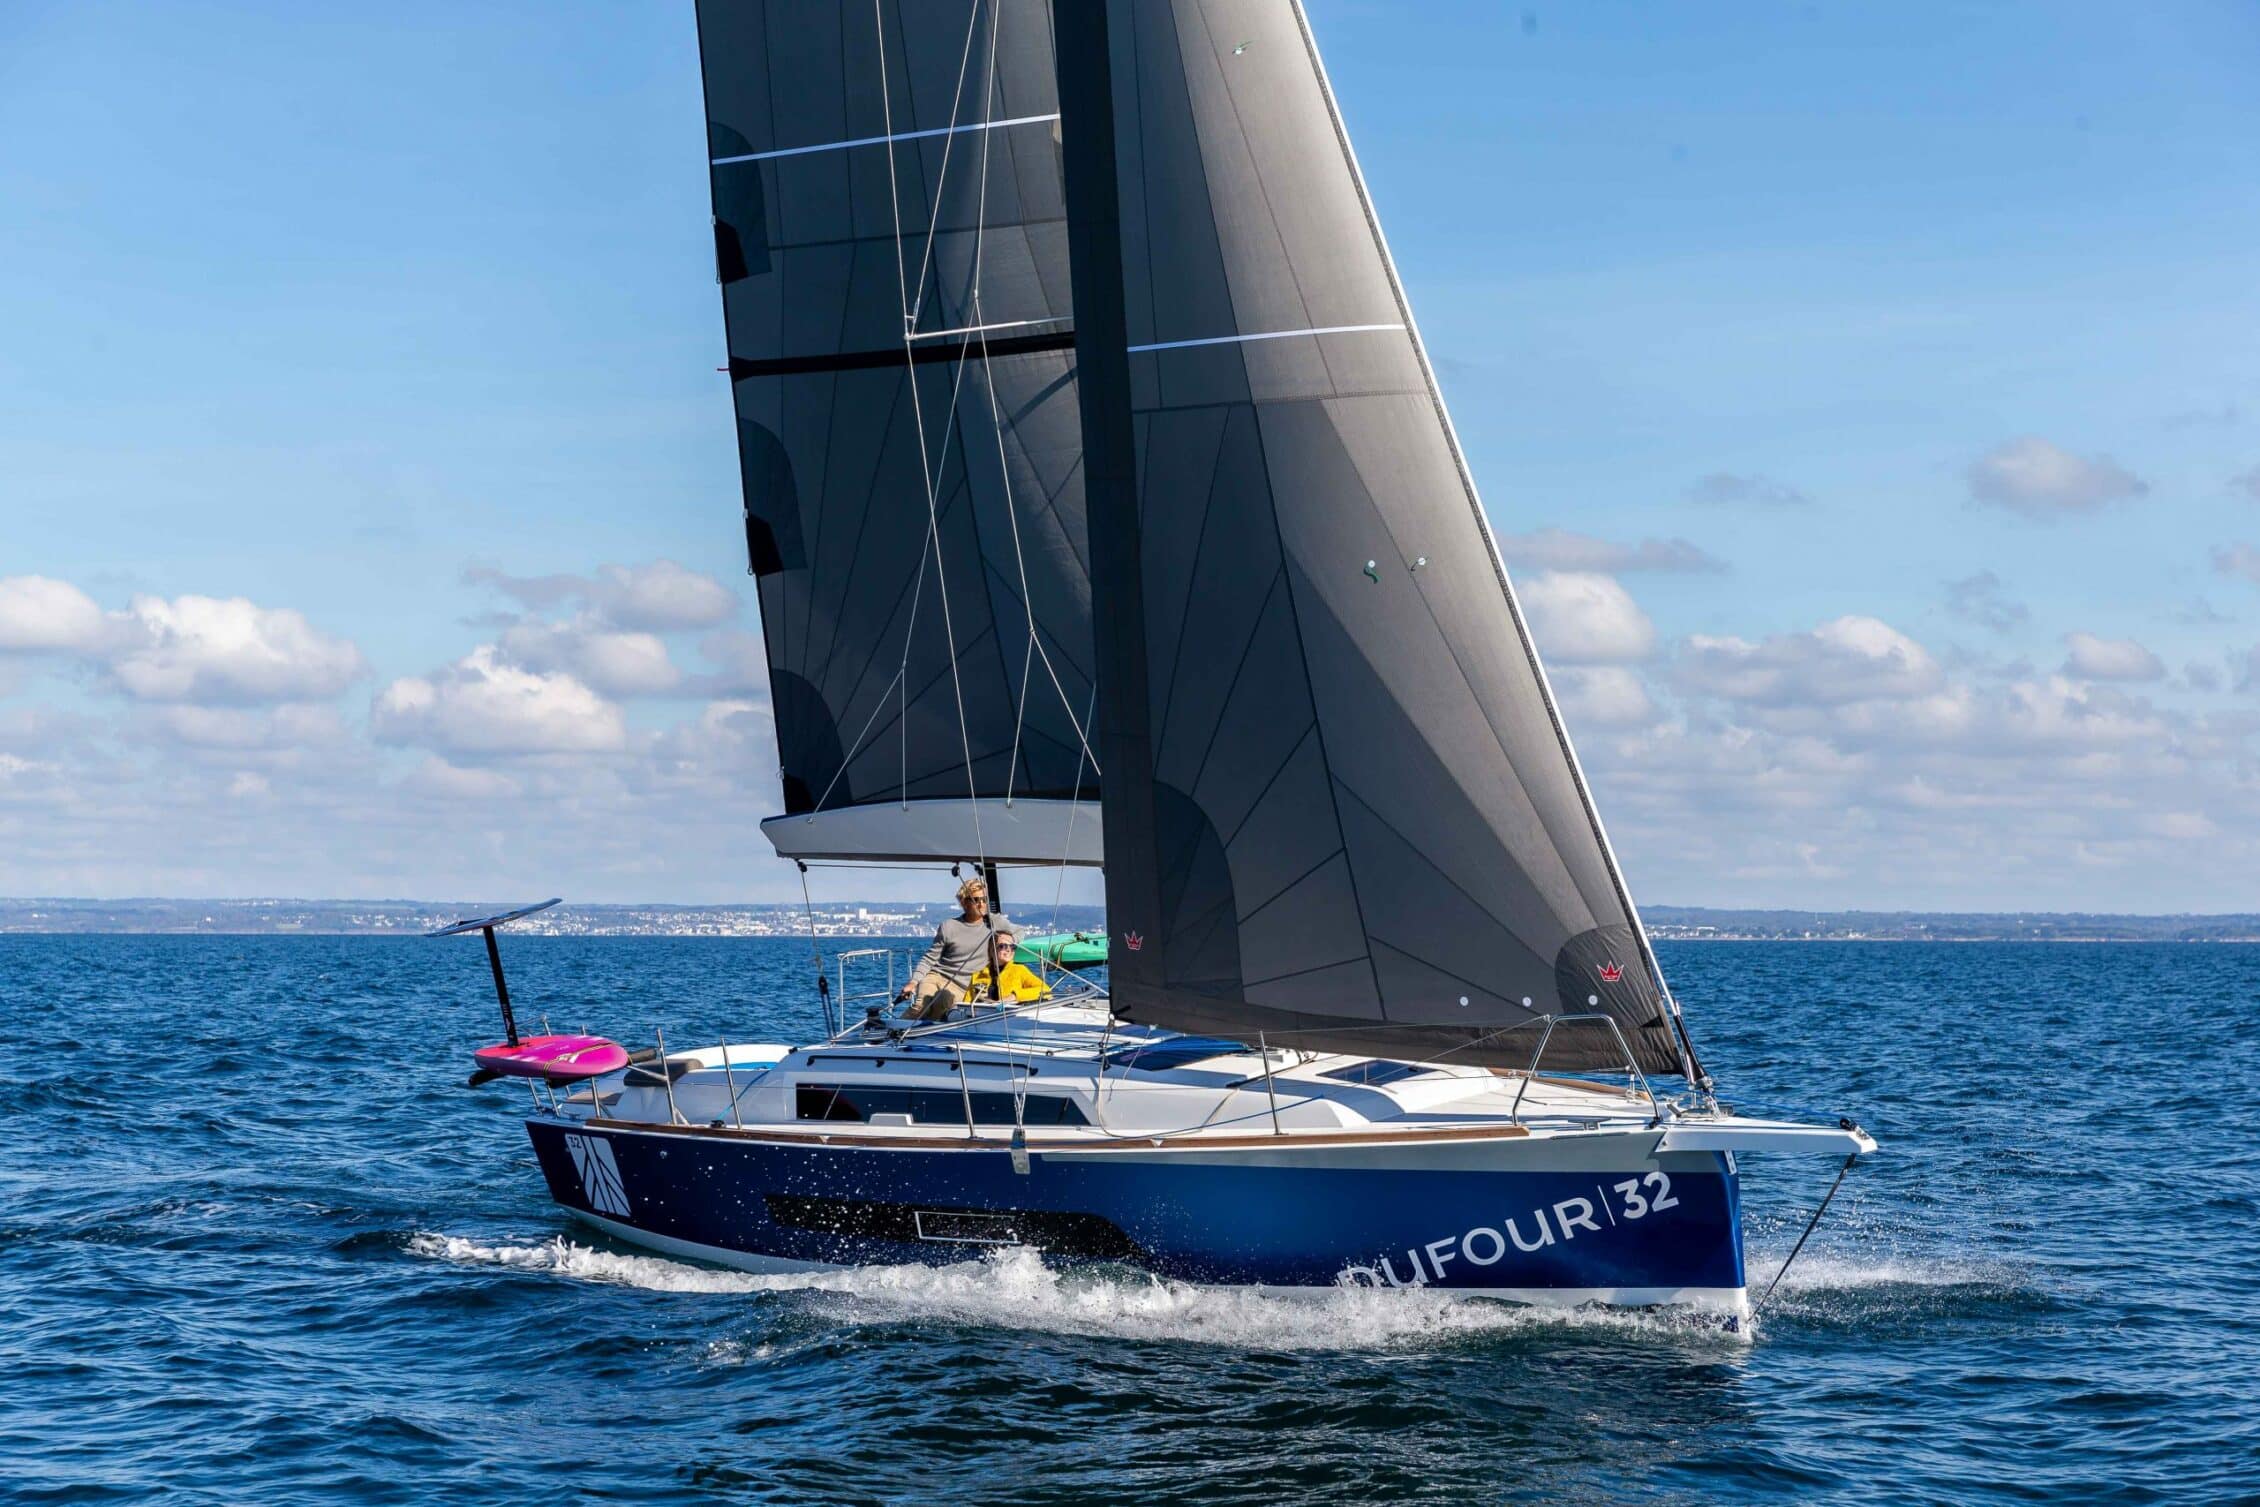 acheter-un-voilier-dufour-yachts-dufour-32